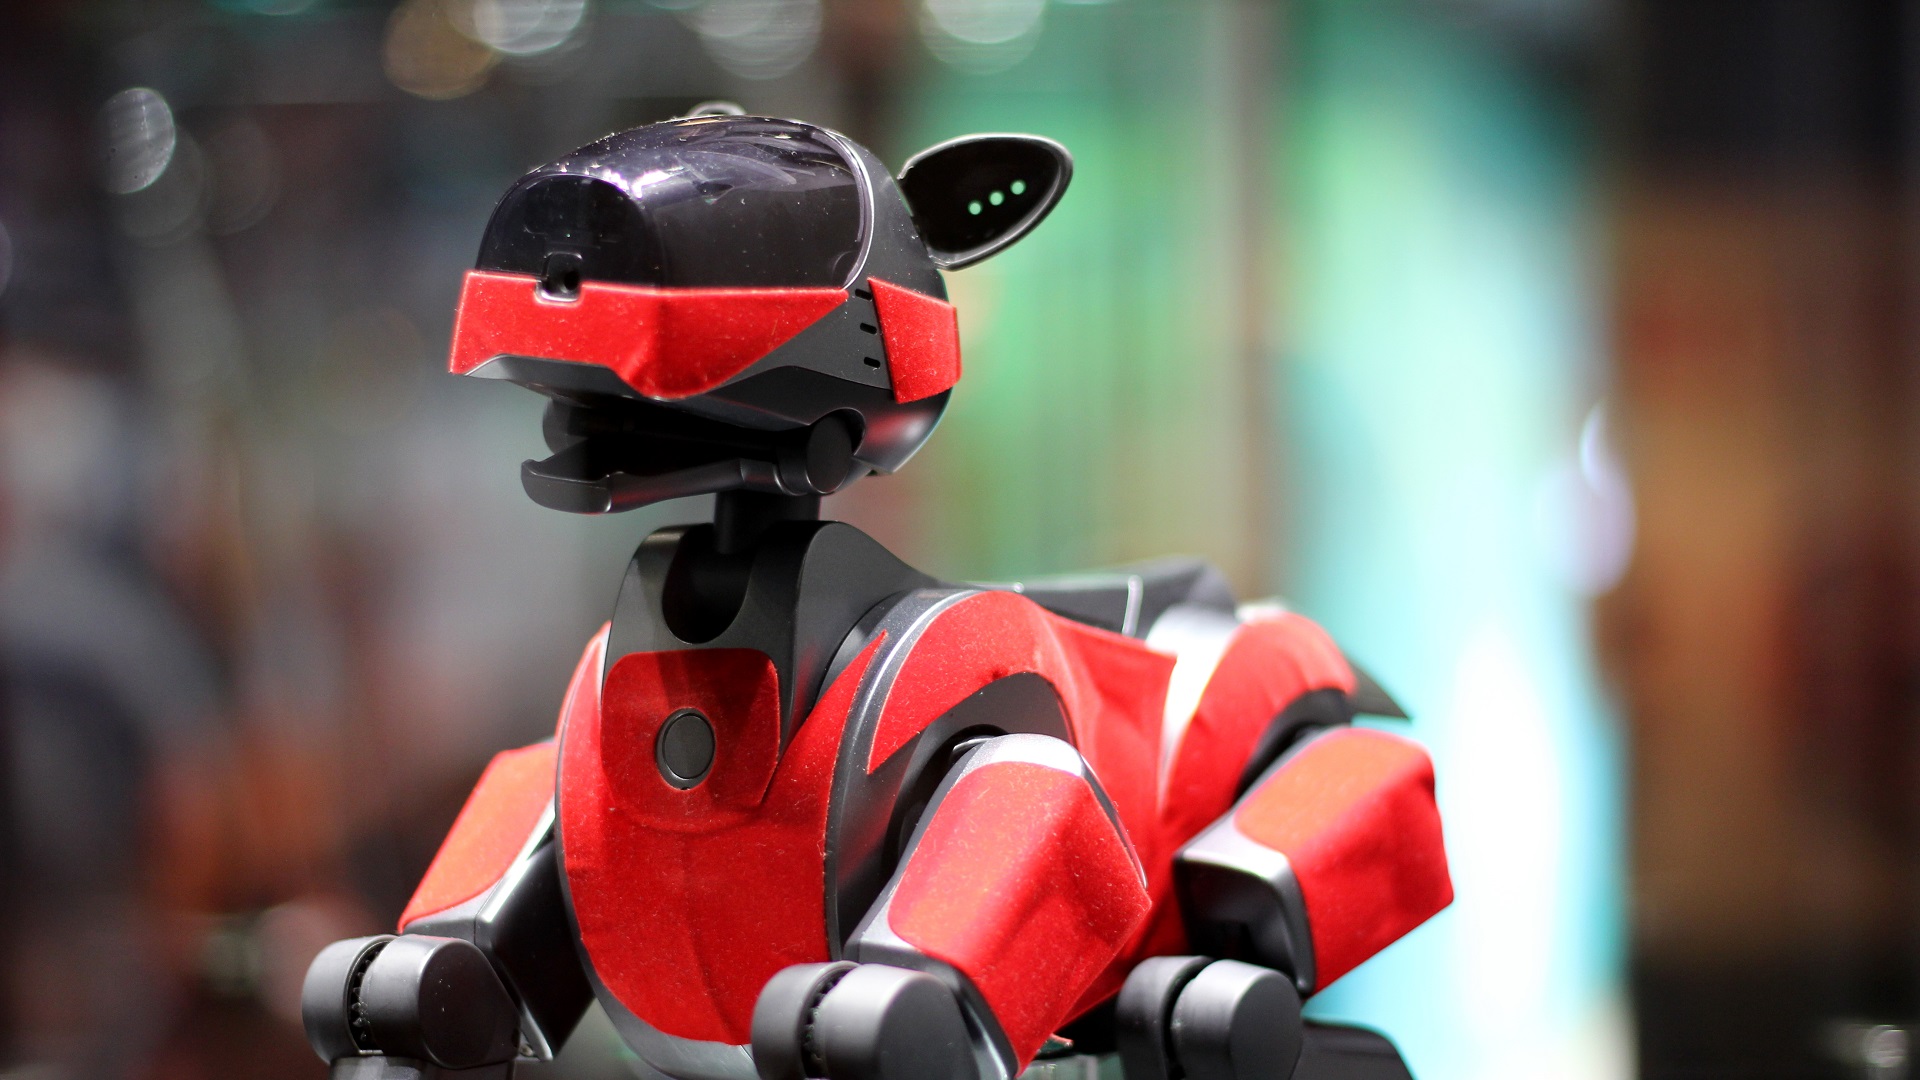 Sony lanza su perro robot Aibo con un precio de 1.500 euros y ya está  agotado